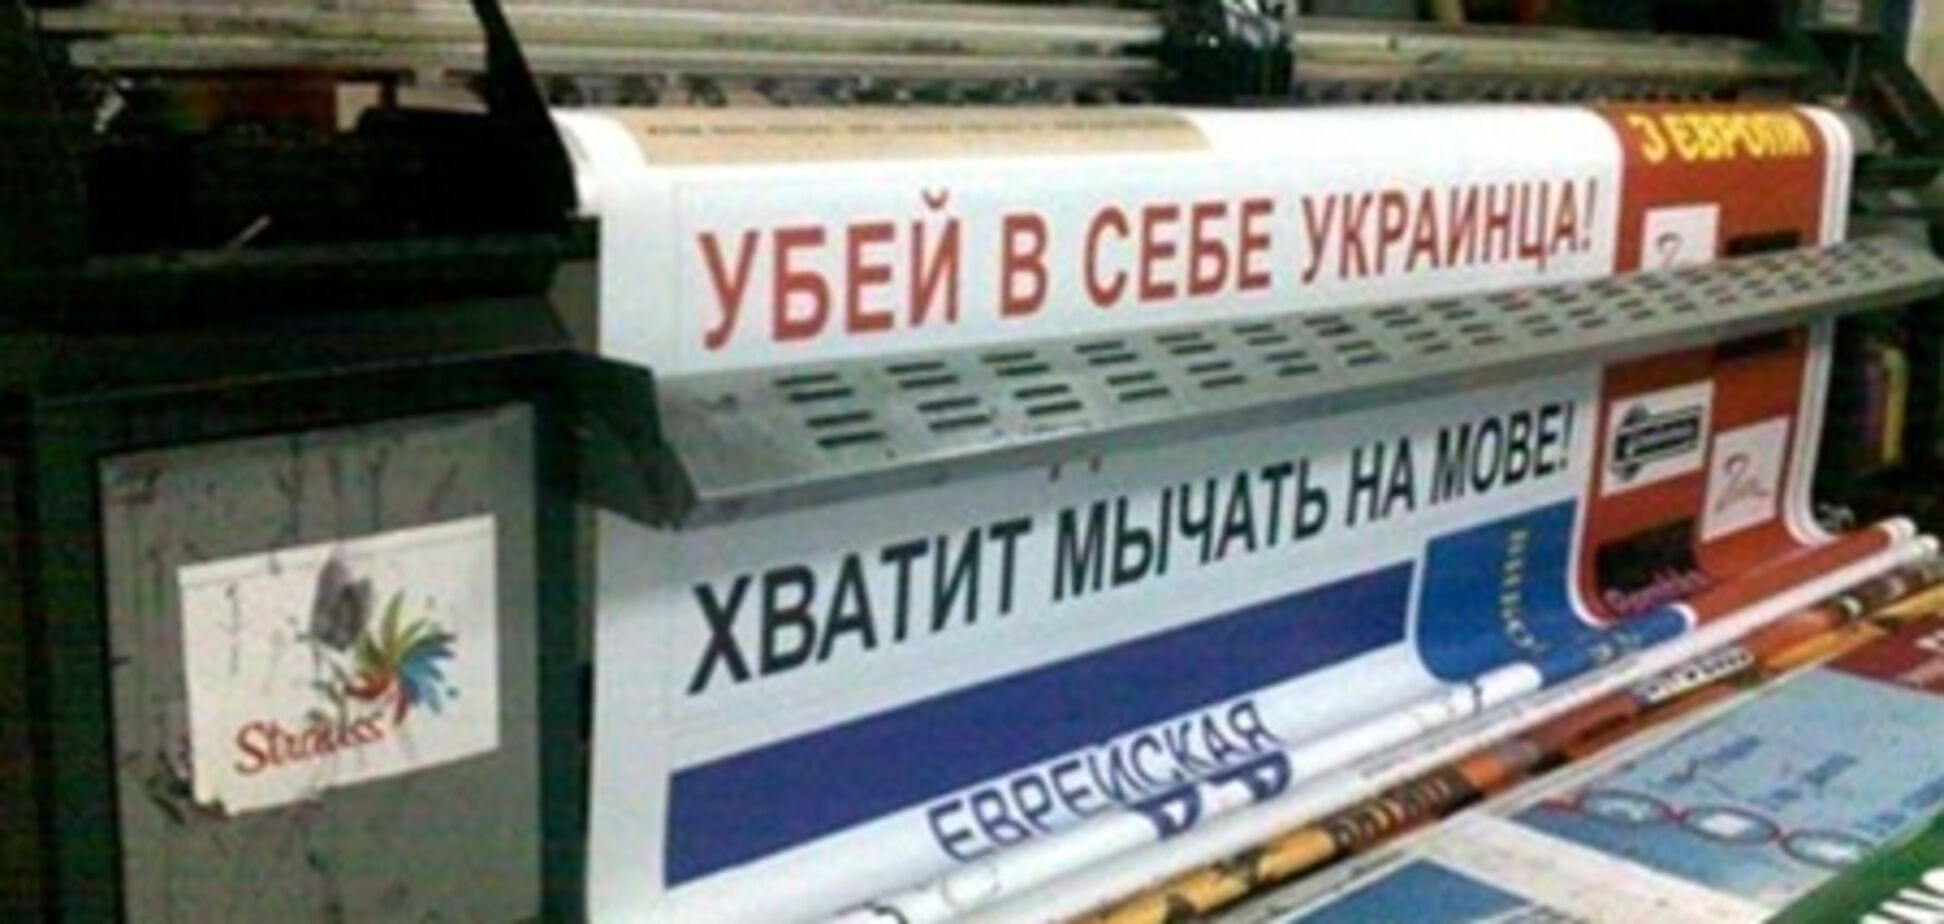 У Криму розгорівся скандал навколо постерів 'Досить мукати на мове!'. Відео